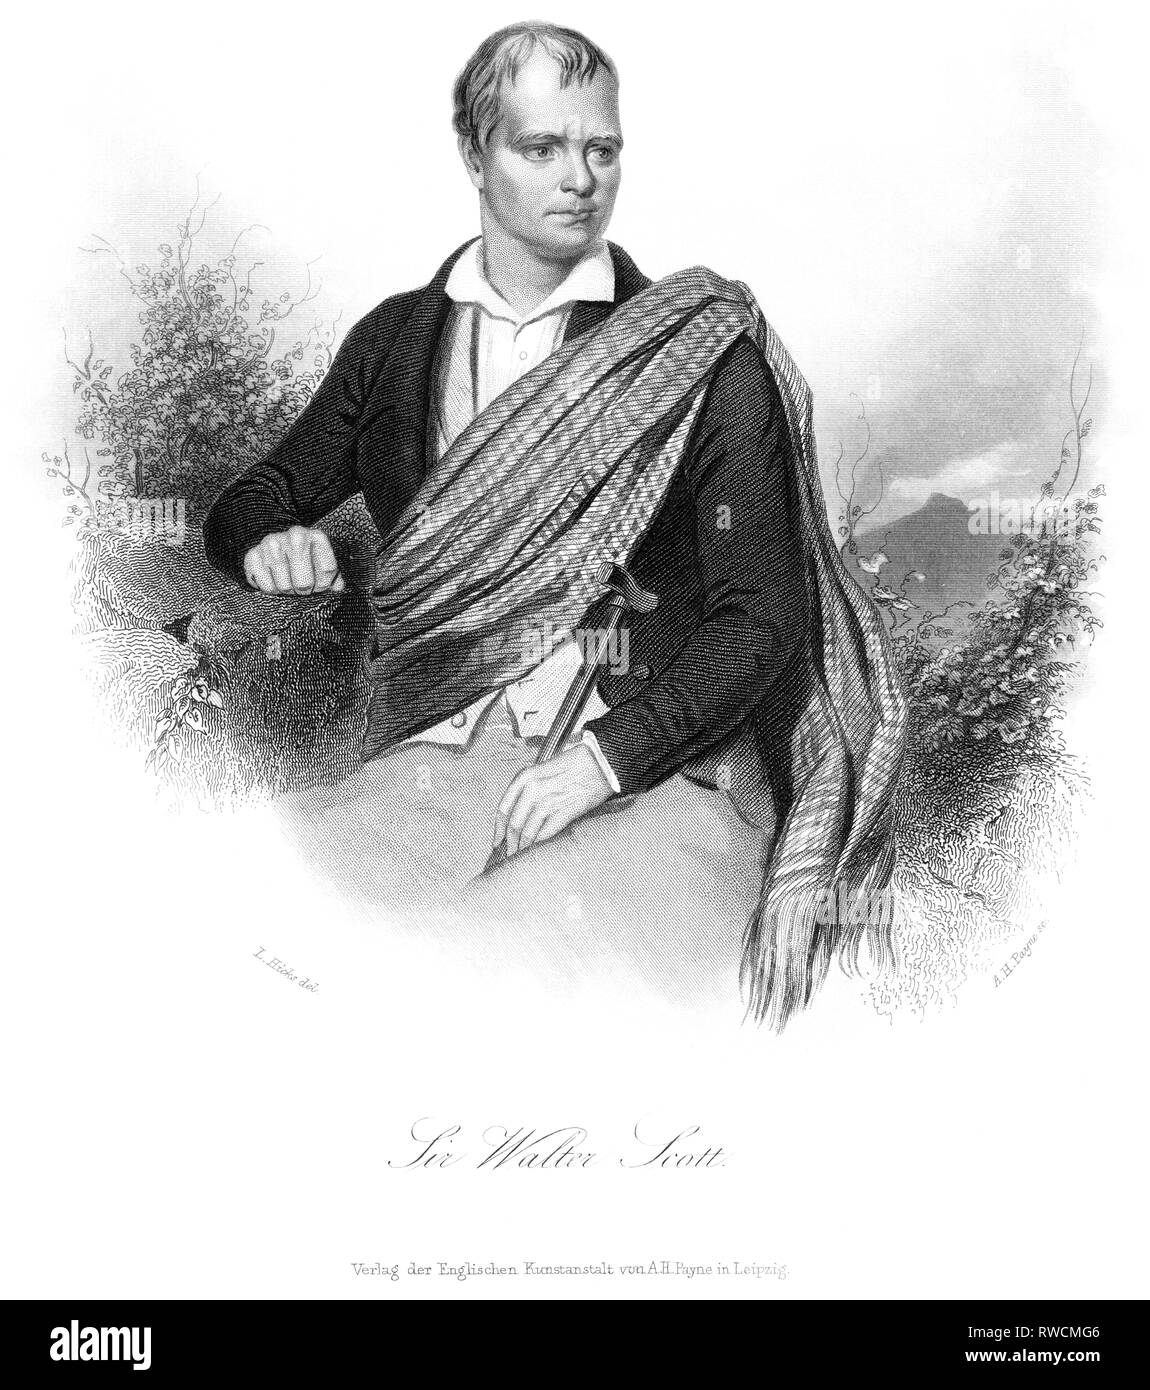 Großbritannien, Schottland, Edinburgh, Sir Walter Scott, schottischer Schriftsteller und Dichter, Stahlstich von A. H. Payne nach L. Hicks, um 1850., Artist's Urheberrecht nicht geklärt zu werden. Stockfoto